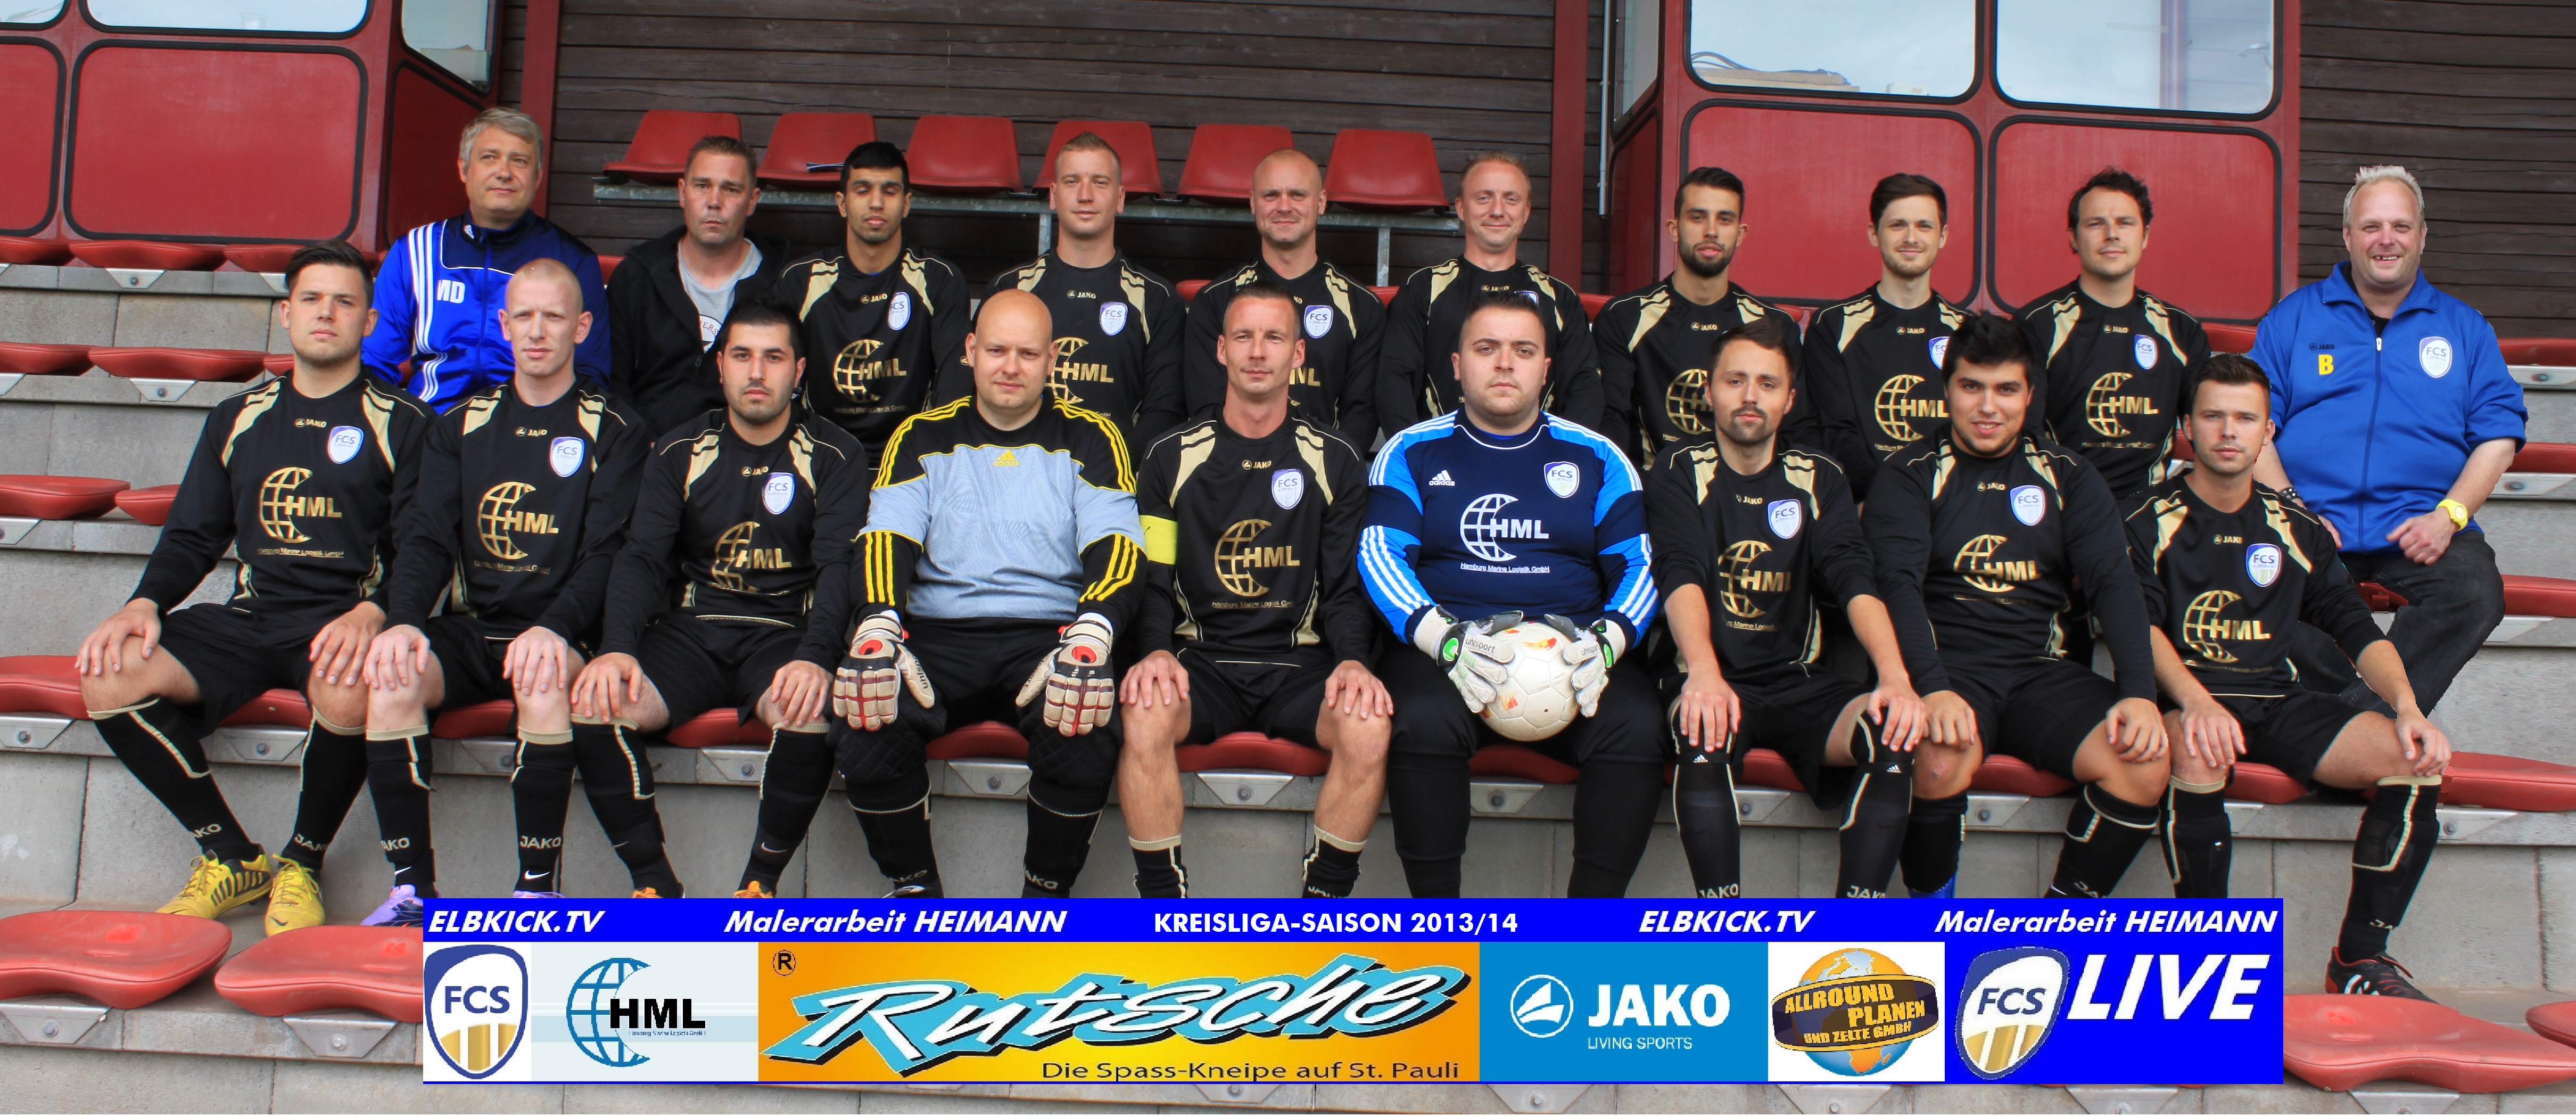 Mannschaftsfoto/Teamfoto von FC Schnelsen